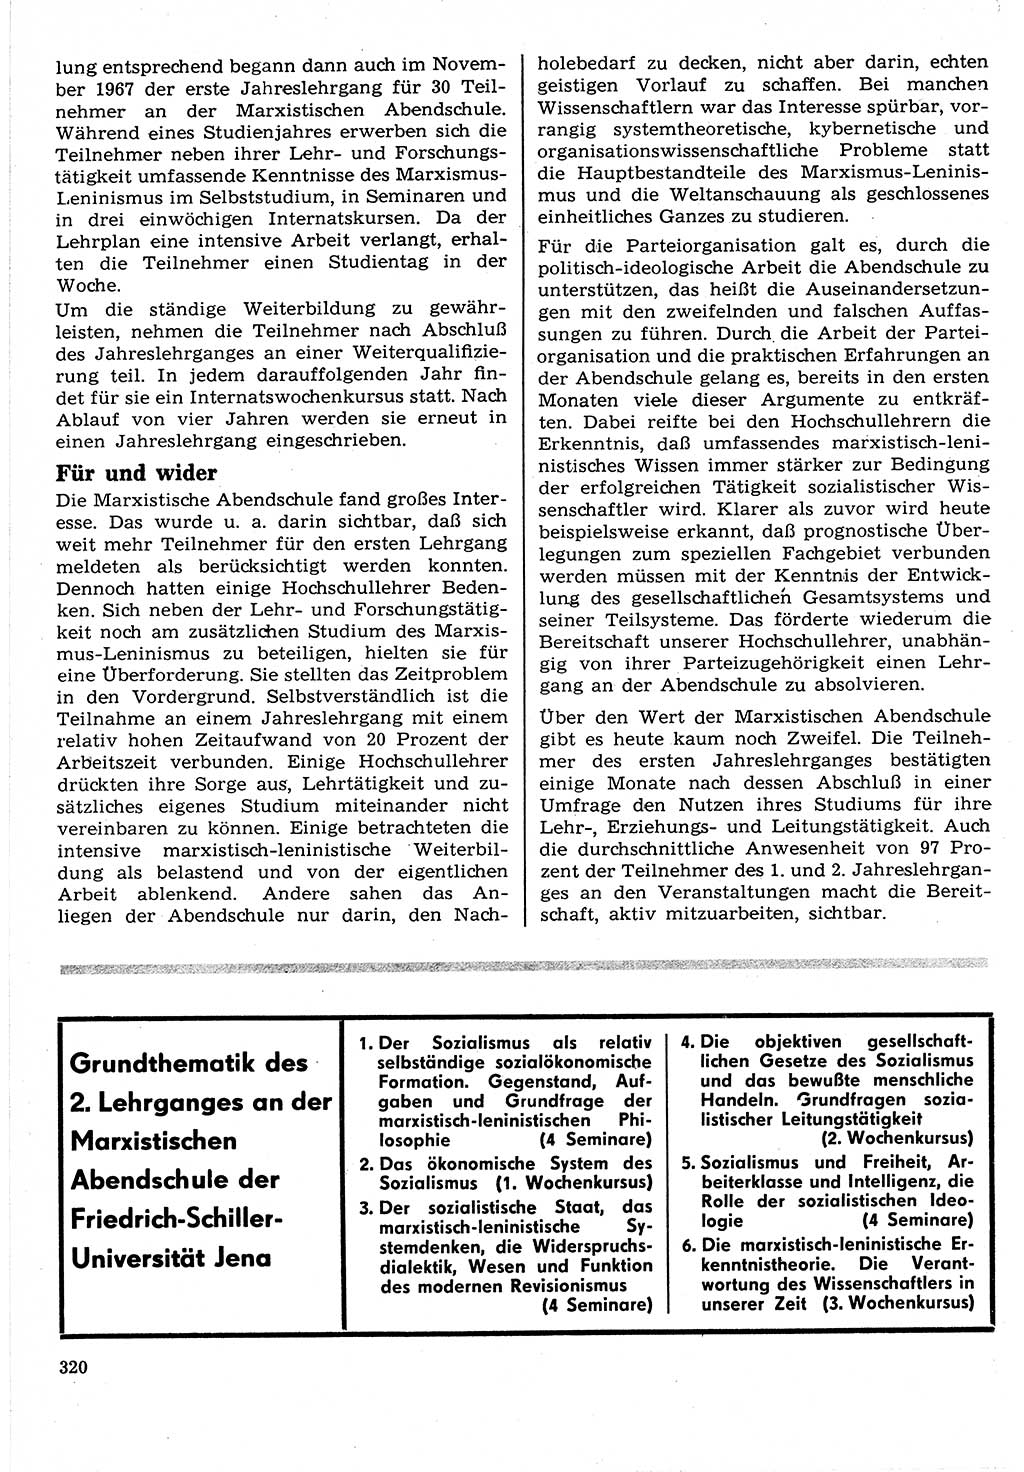 Neuer Weg (NW), Organ des Zentralkomitees (ZK) der SED (Sozialistische Einheitspartei Deutschlands) für Fragen des Parteilebens, 24. Jahrgang [Deutsche Demokratische Republik (DDR)] 1969, Seite 320 (NW ZK SED DDR 1969, S. 320)